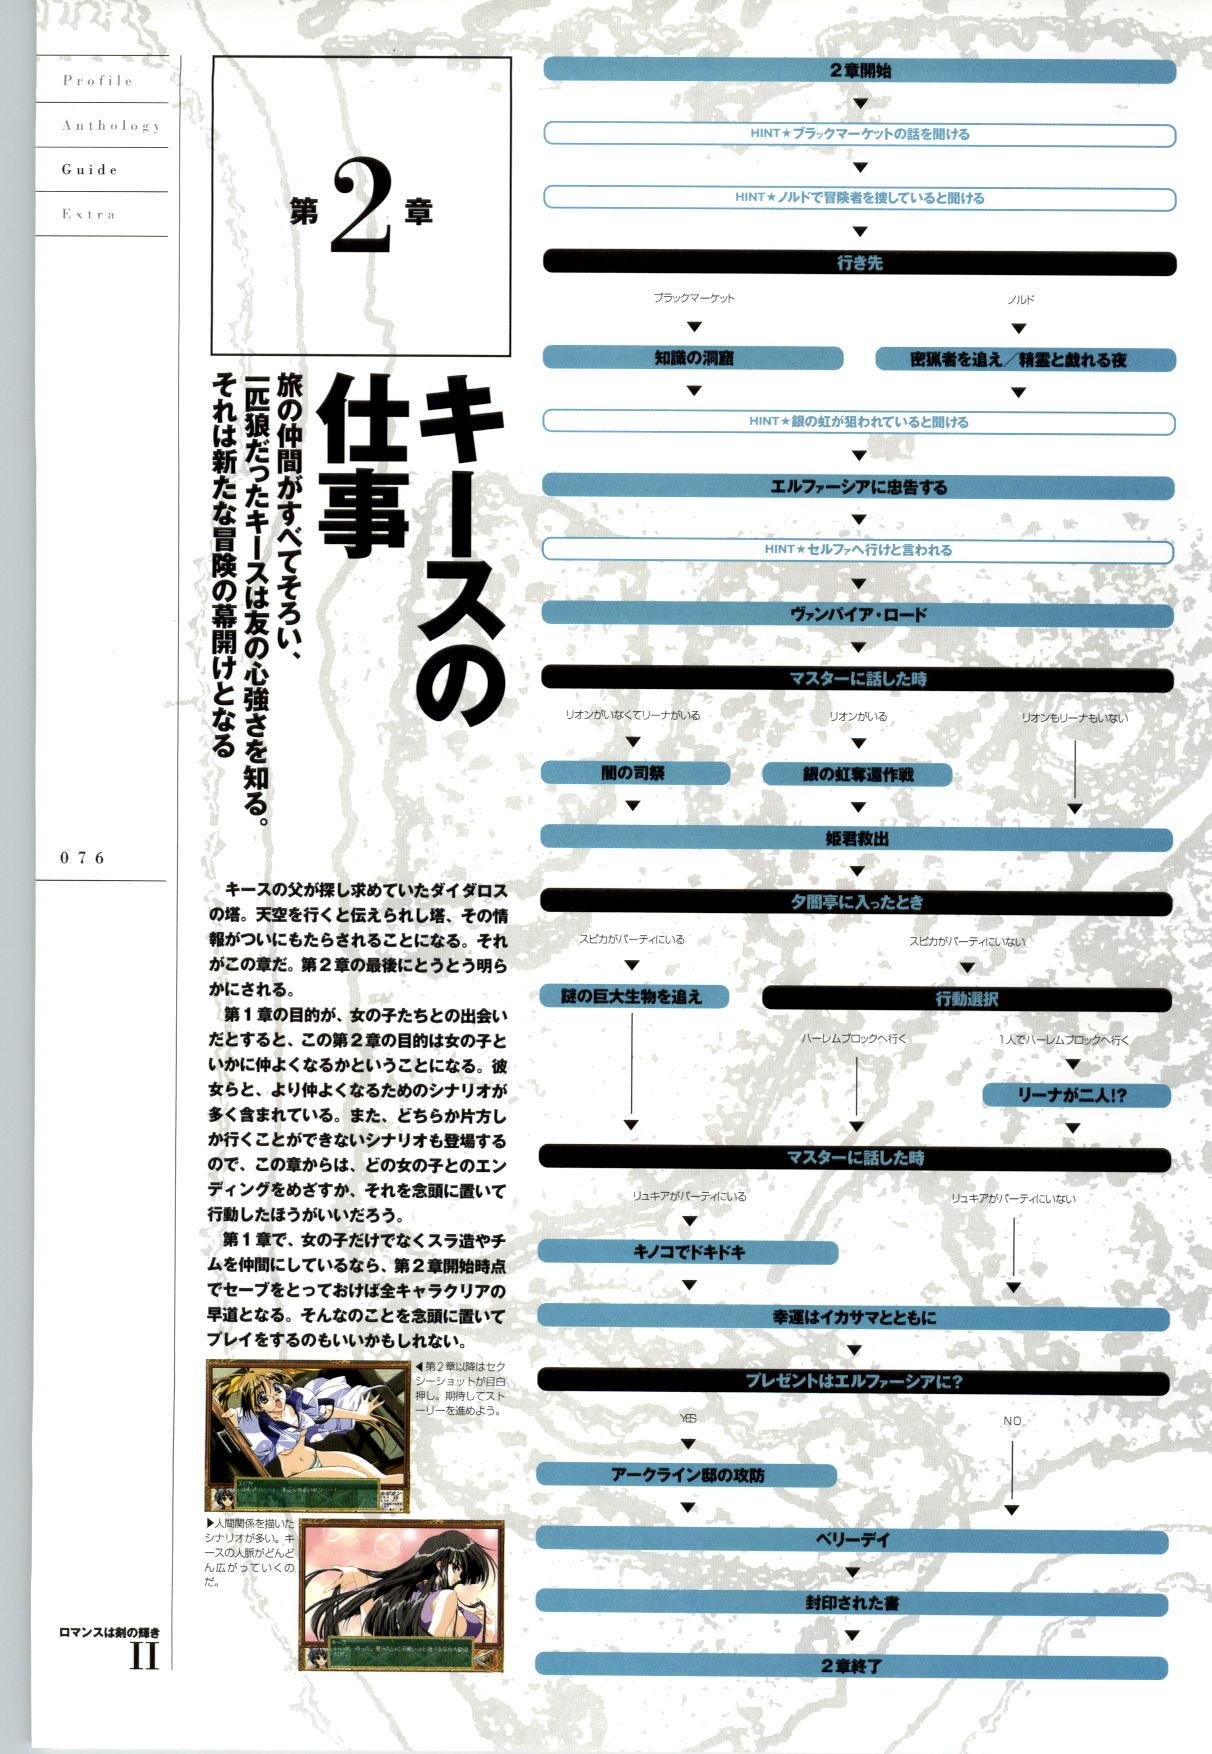 [FAIRYTALE] Romance wa Tsurugi no Kagayaki II - Koushiki Kaido - Emotional Fanbook 76